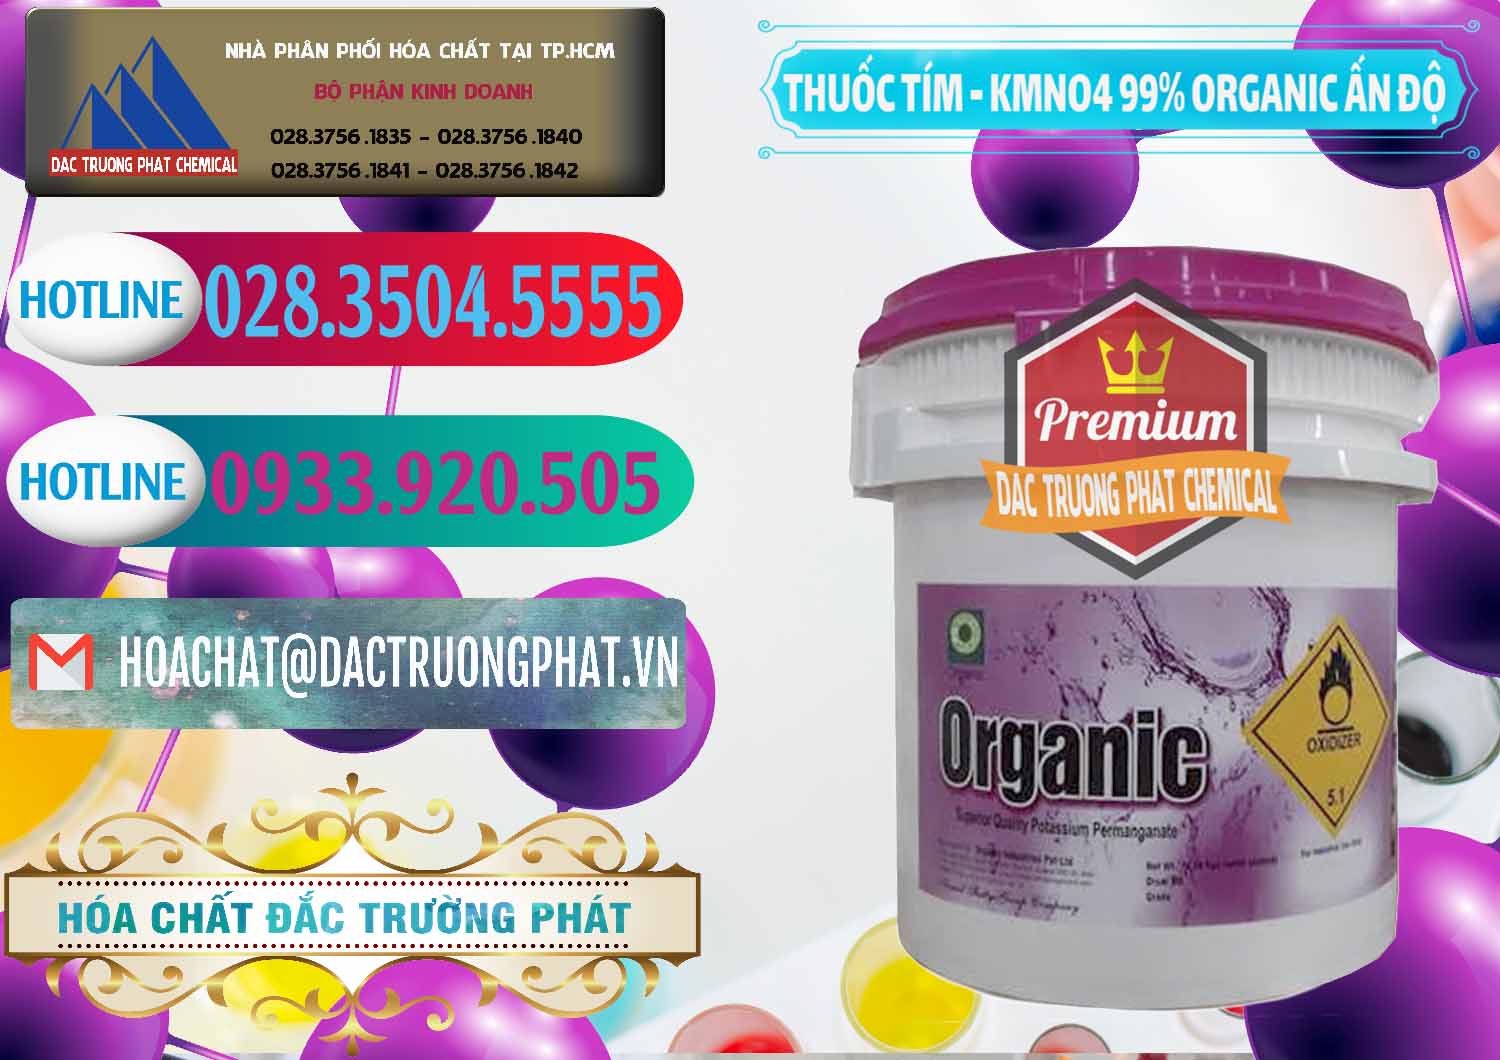 Đơn vị nhập khẩu _ bán Thuốc Tím - KMNO4 99% Organic Ấn Độ India - 0216 - Nơi phân phối ( cung cấp ) hóa chất tại TP.HCM - truongphat.vn